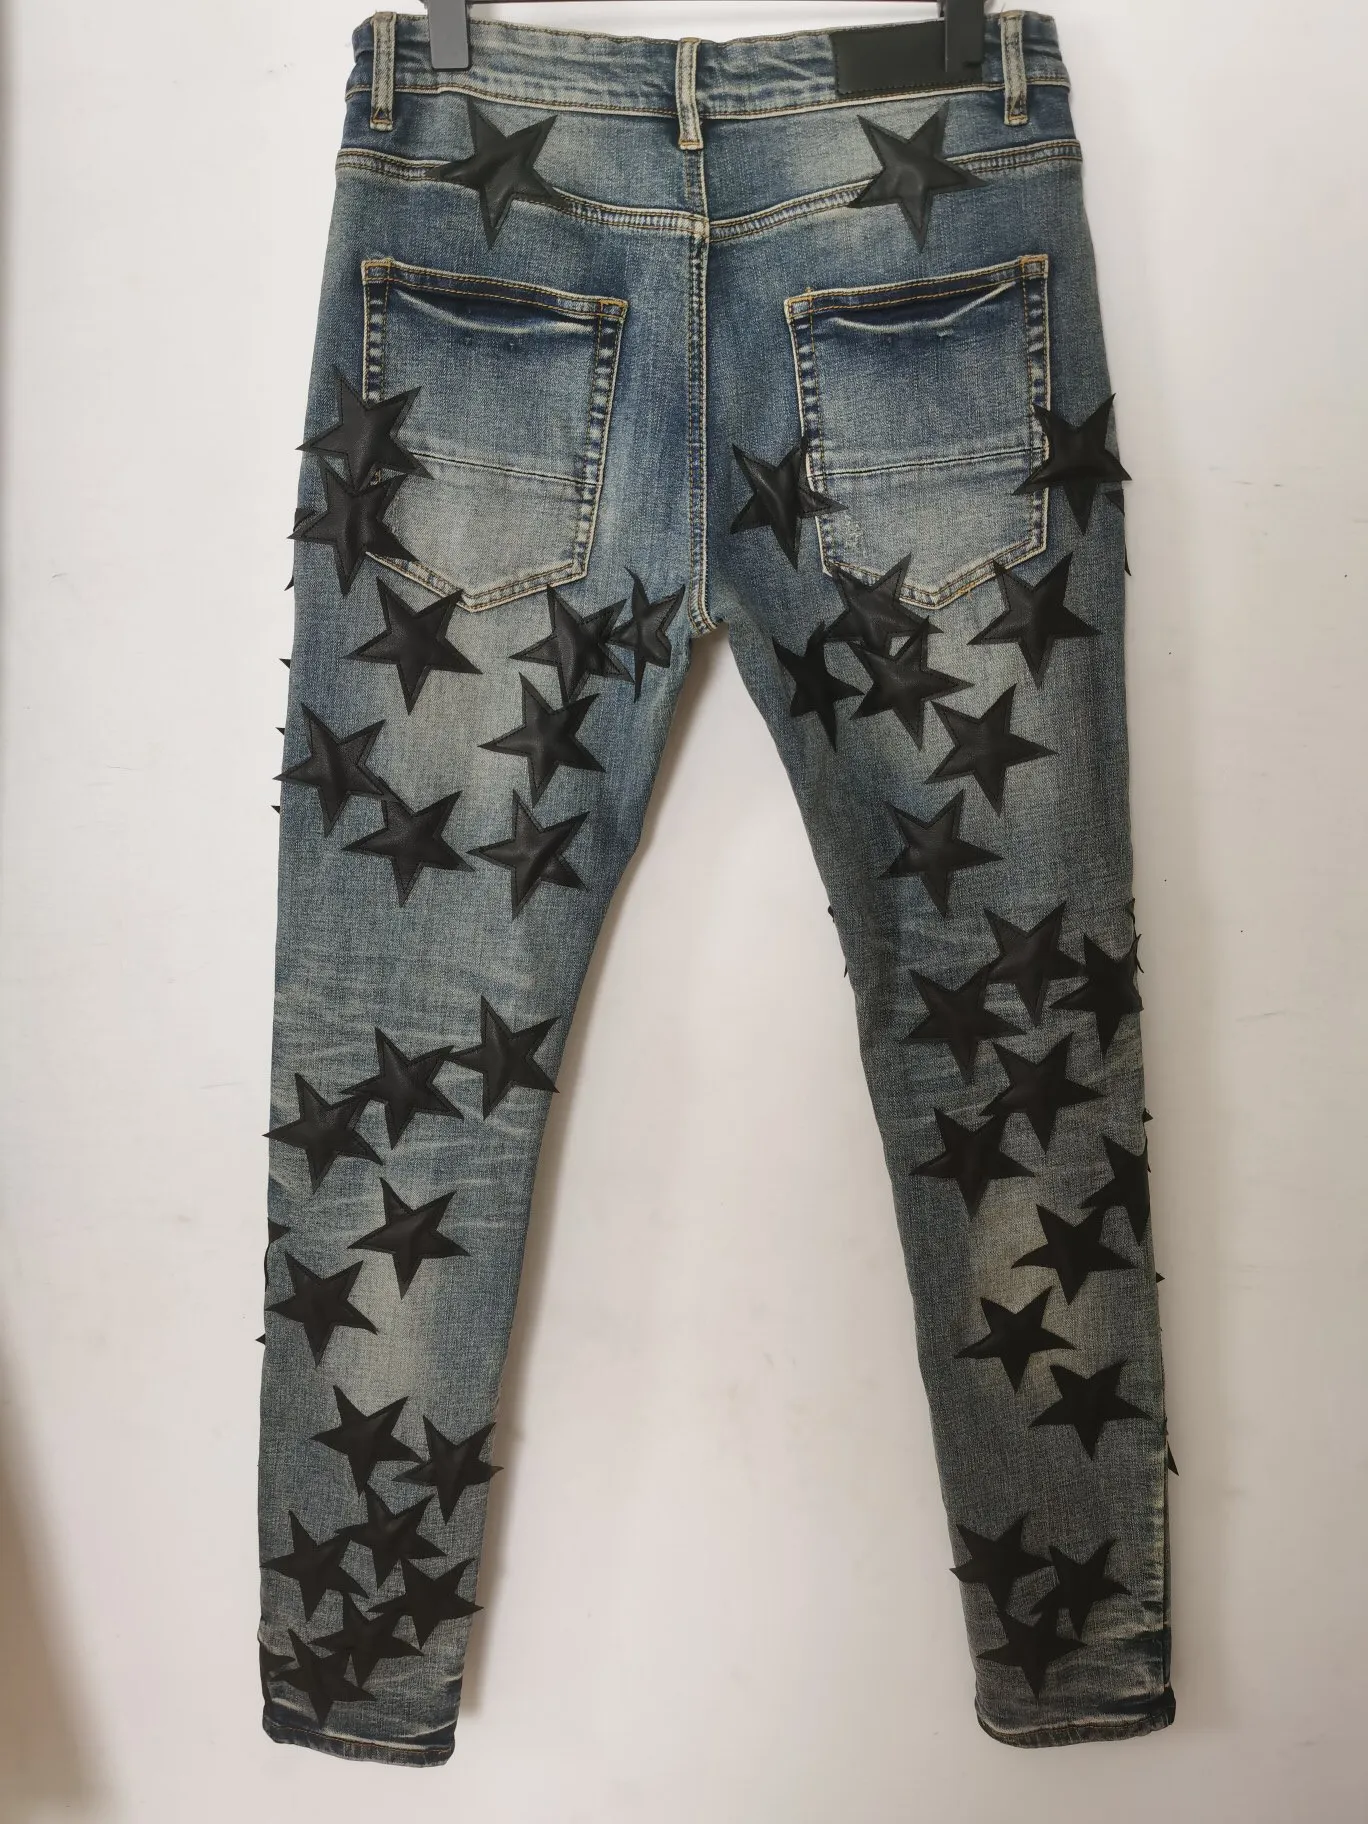 heren jeans broek lang mager leer vijfpuntige ster vernietigen de quilt gescheurd gat modeontwerper jean mannen ontwerpers clothes327t